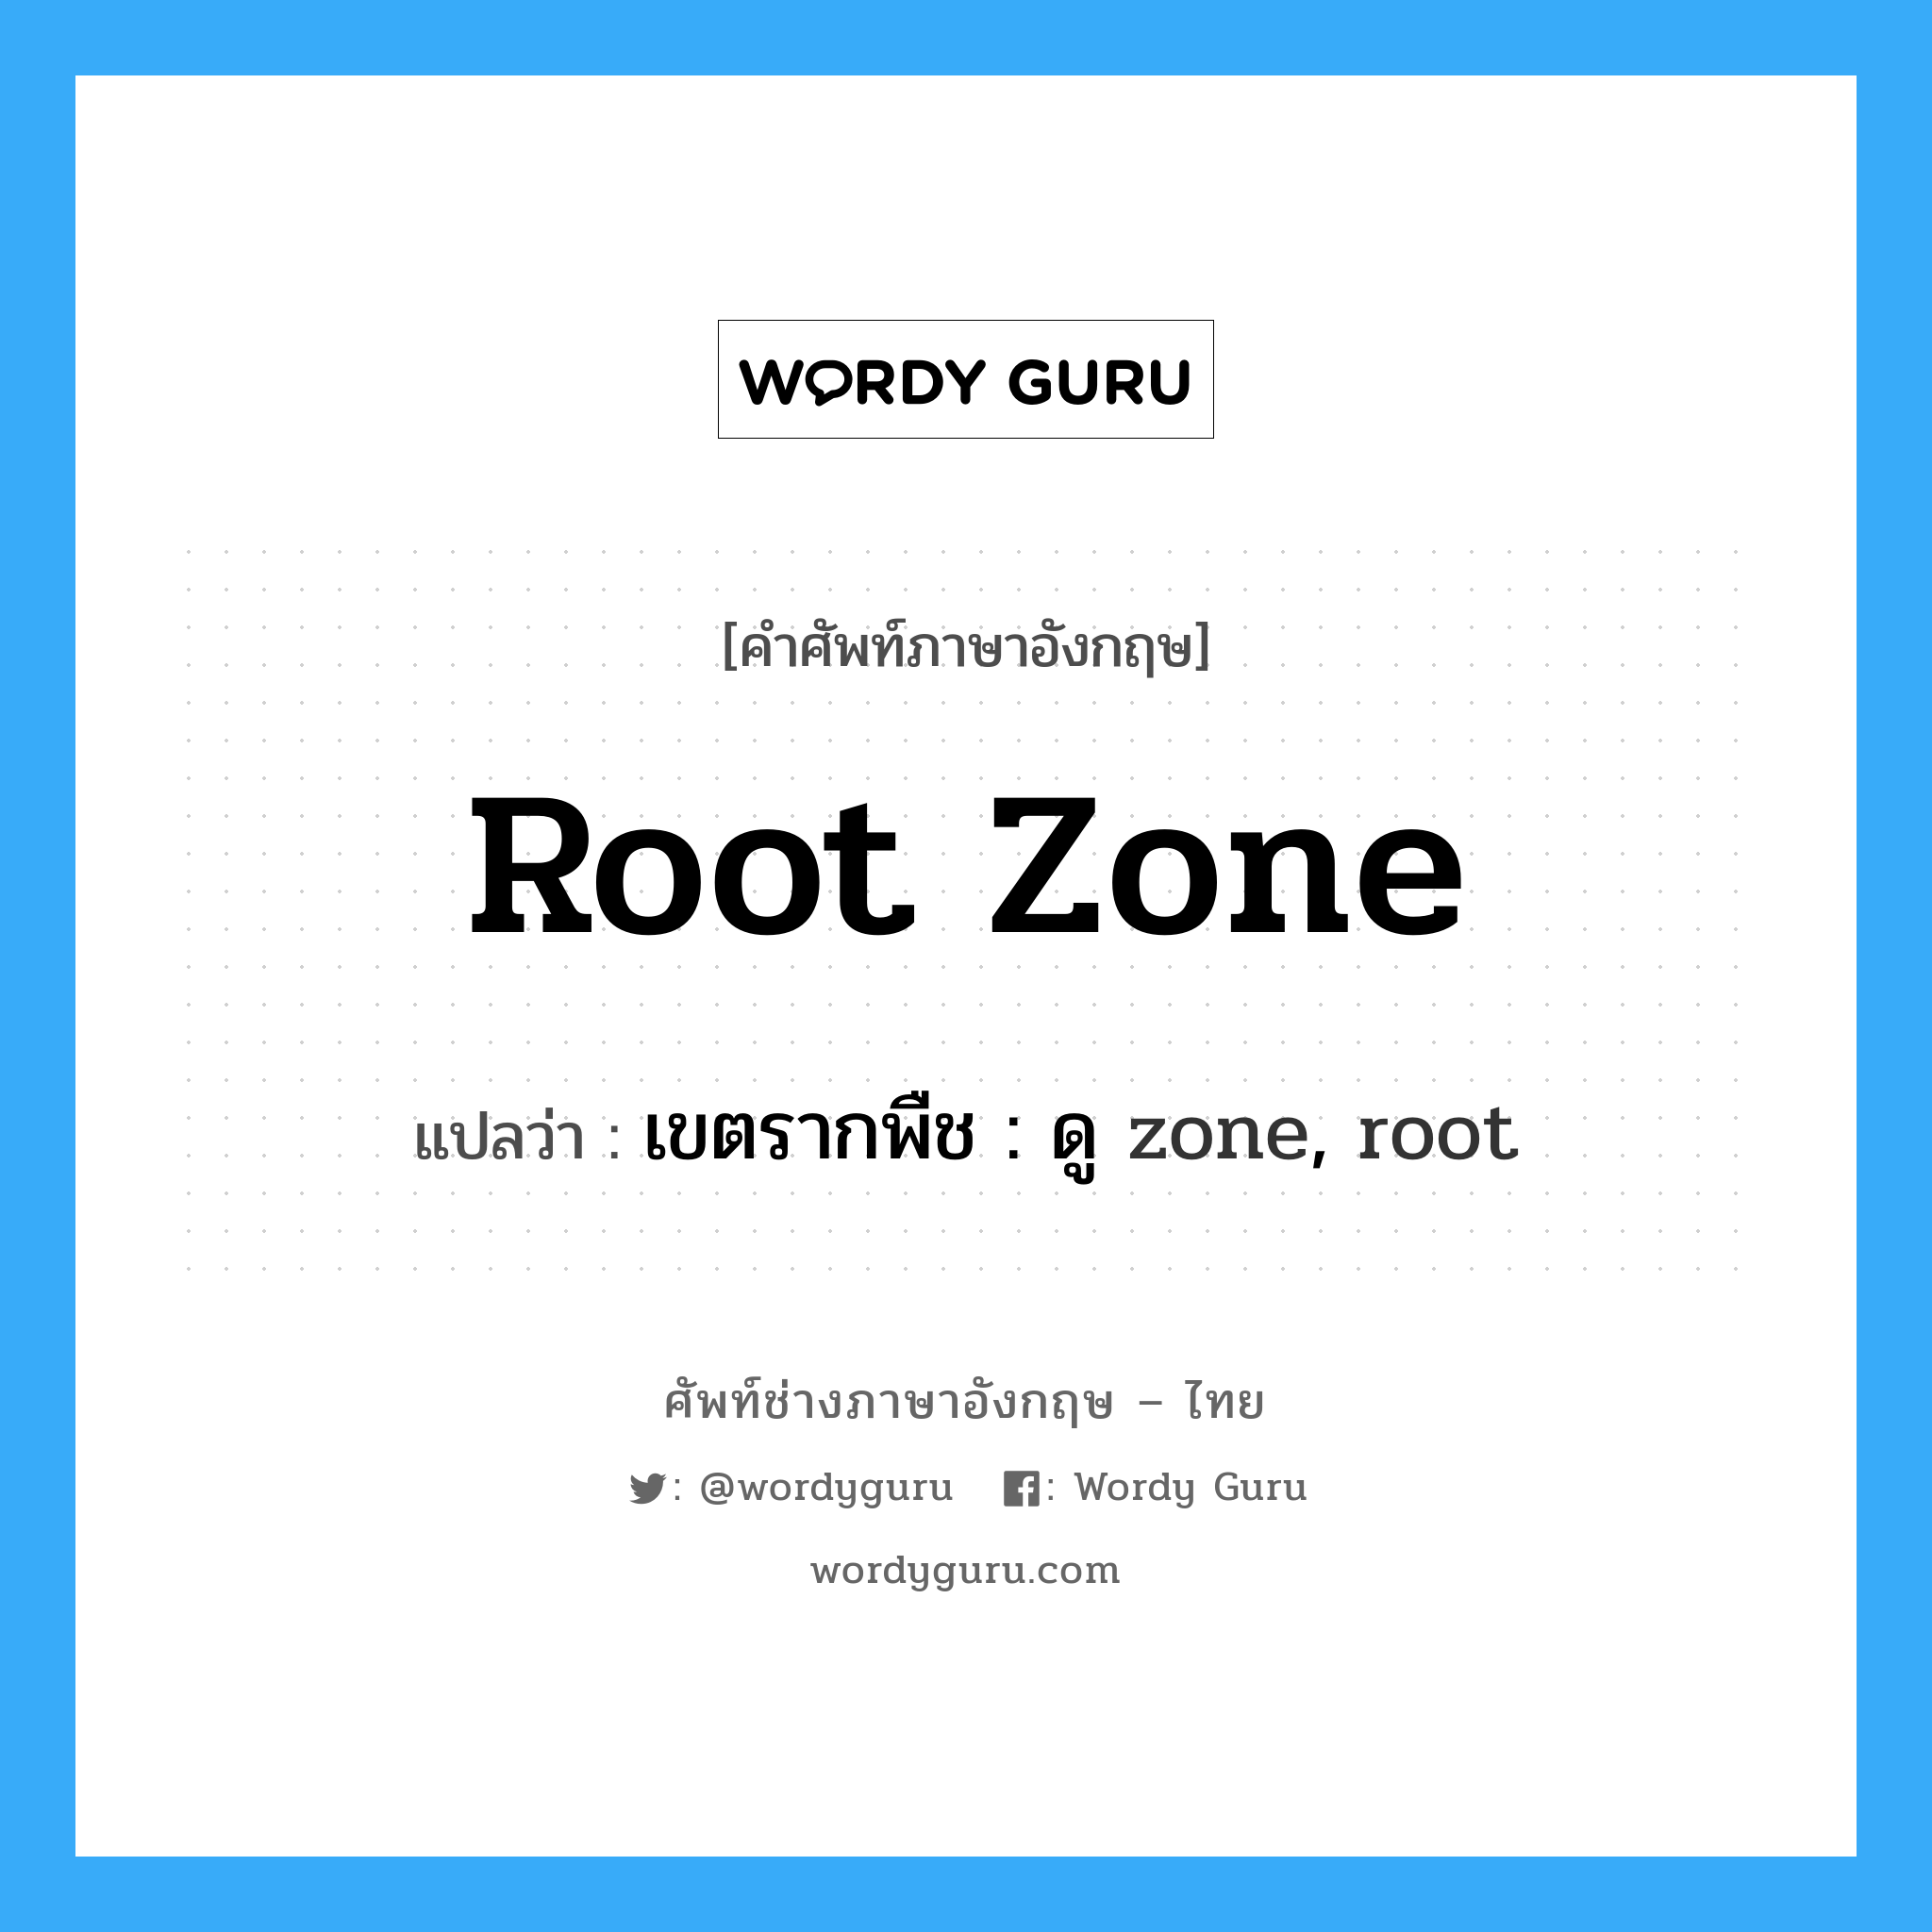 root zone แปลว่า?, คำศัพท์ช่างภาษาอังกฤษ - ไทย root zone คำศัพท์ภาษาอังกฤษ root zone แปลว่า เขตรากพืช : ดู zone, root